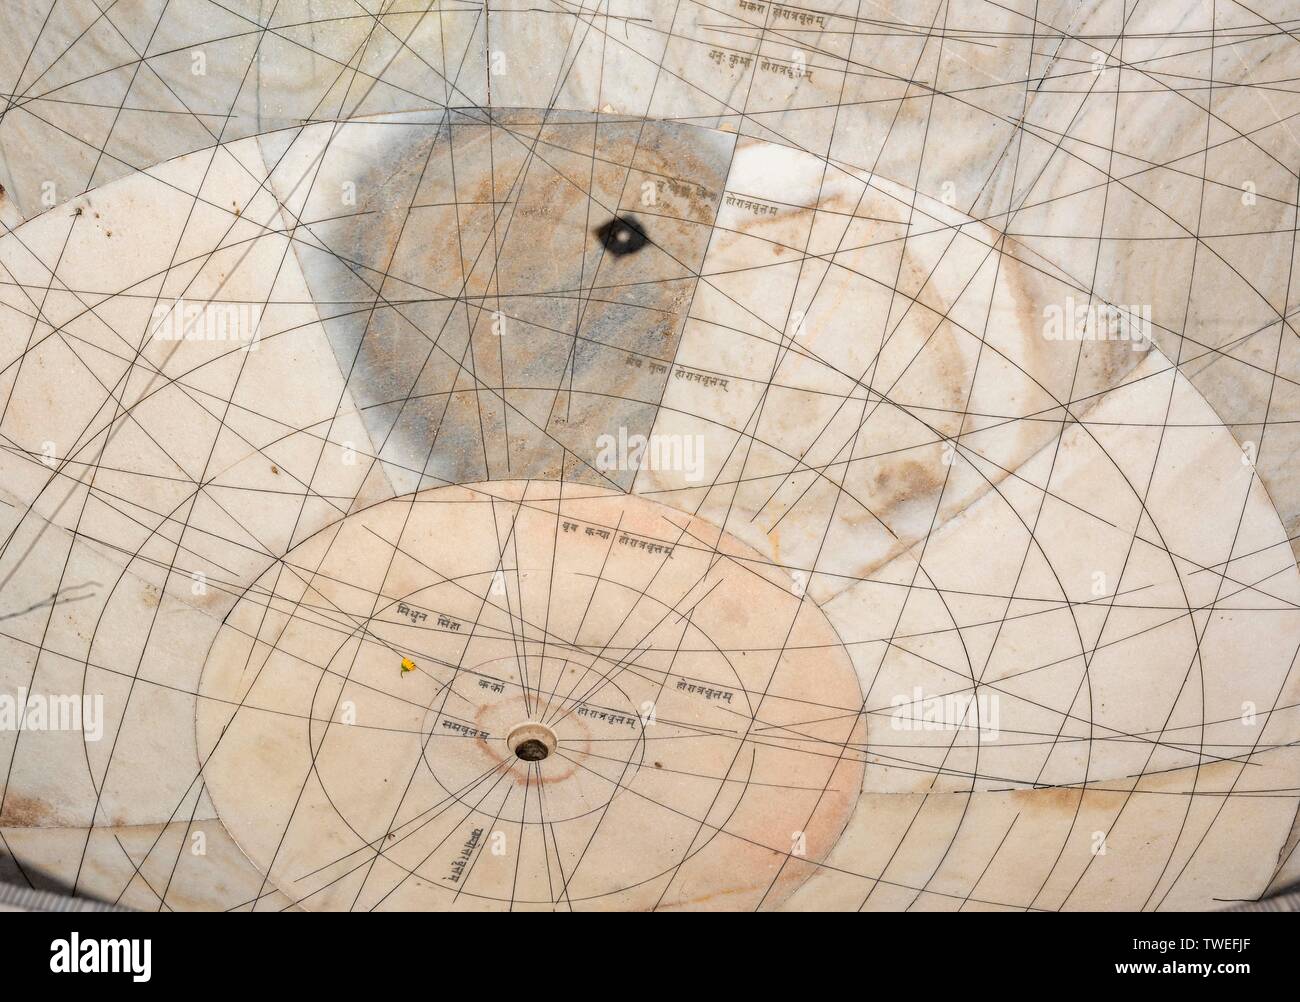 Instrument astronomique Chakra Yantra, l'observatoire Jantar Mantar, Jaipur, Rajasthan, Inde Banque D'Images